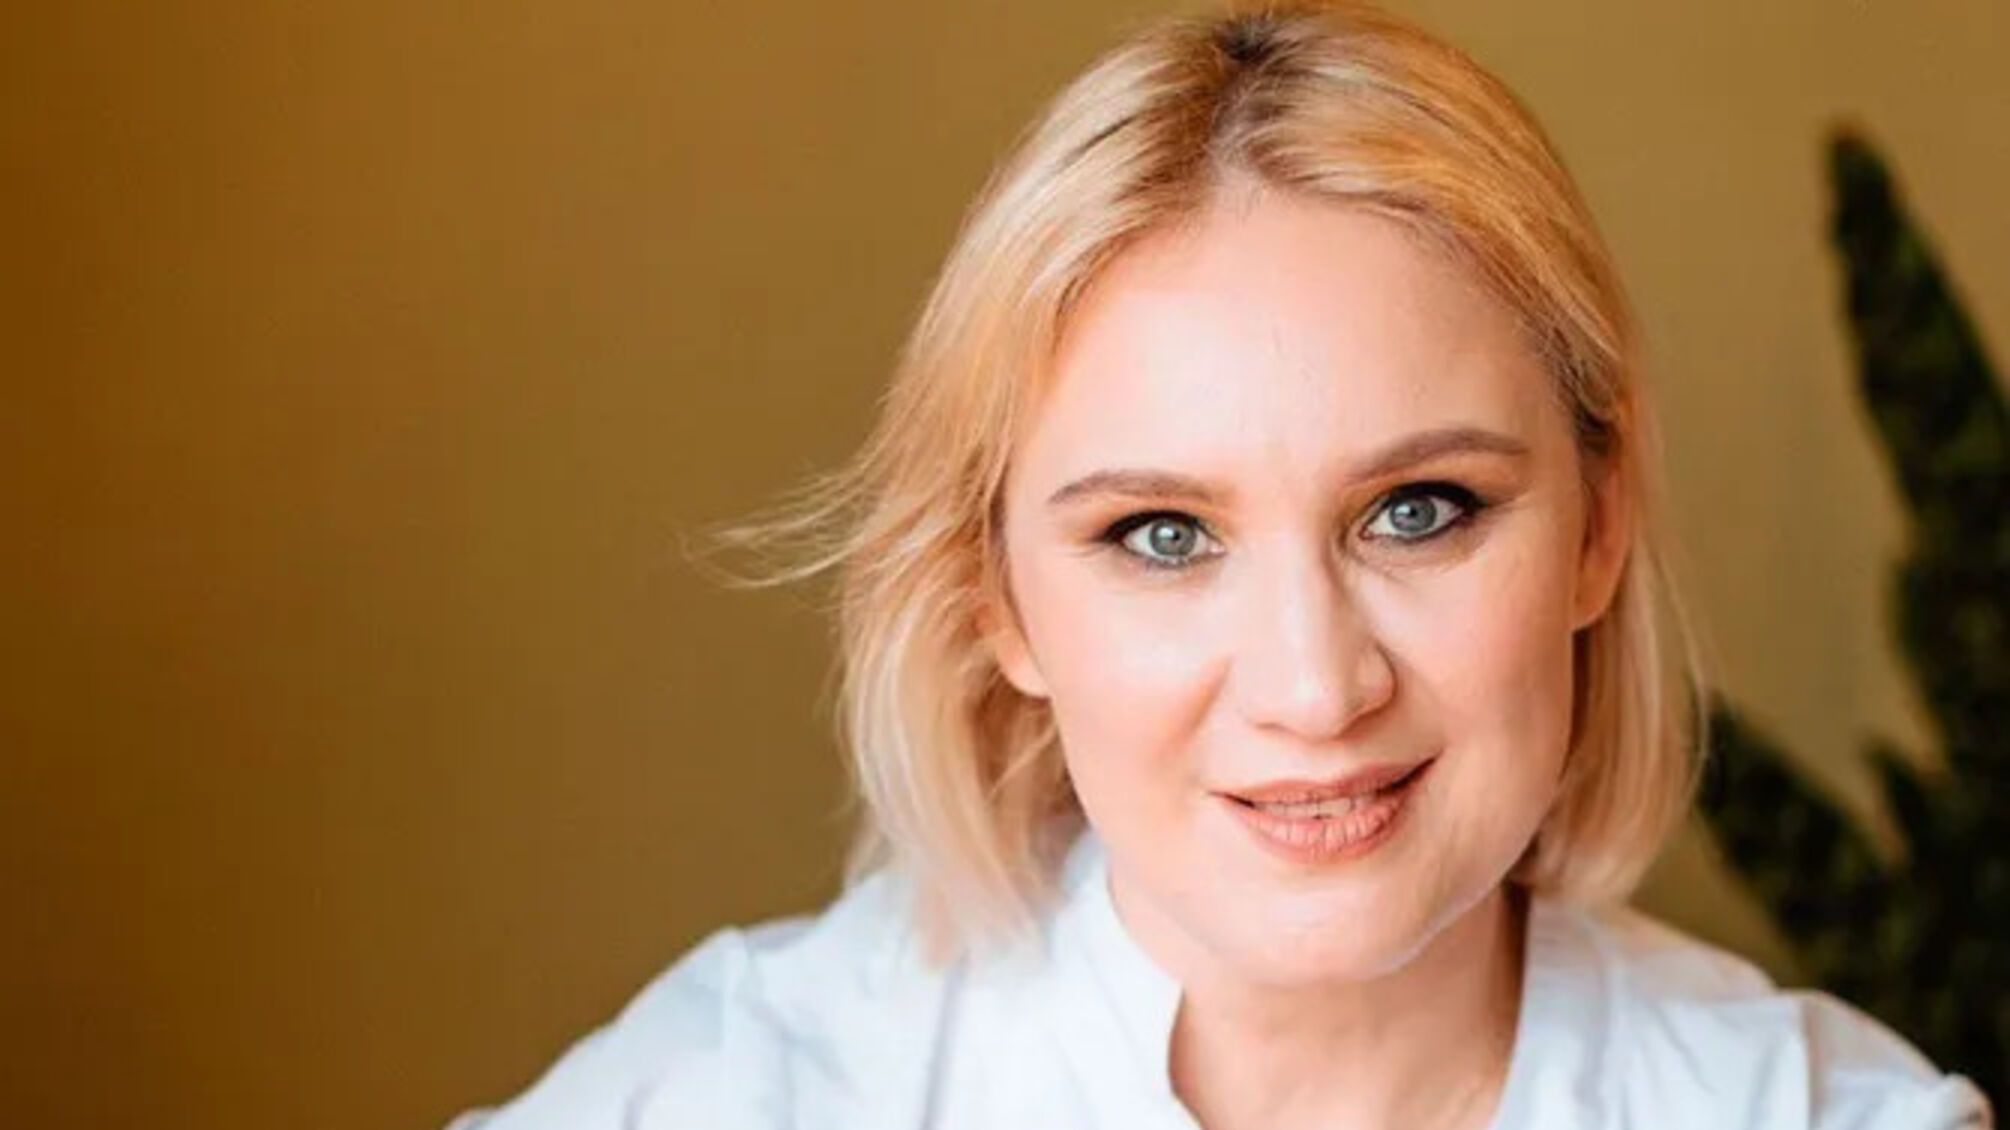 'Небезпечний експеримент': дієтологиня Самойленко розповіла про інтервальне голодування